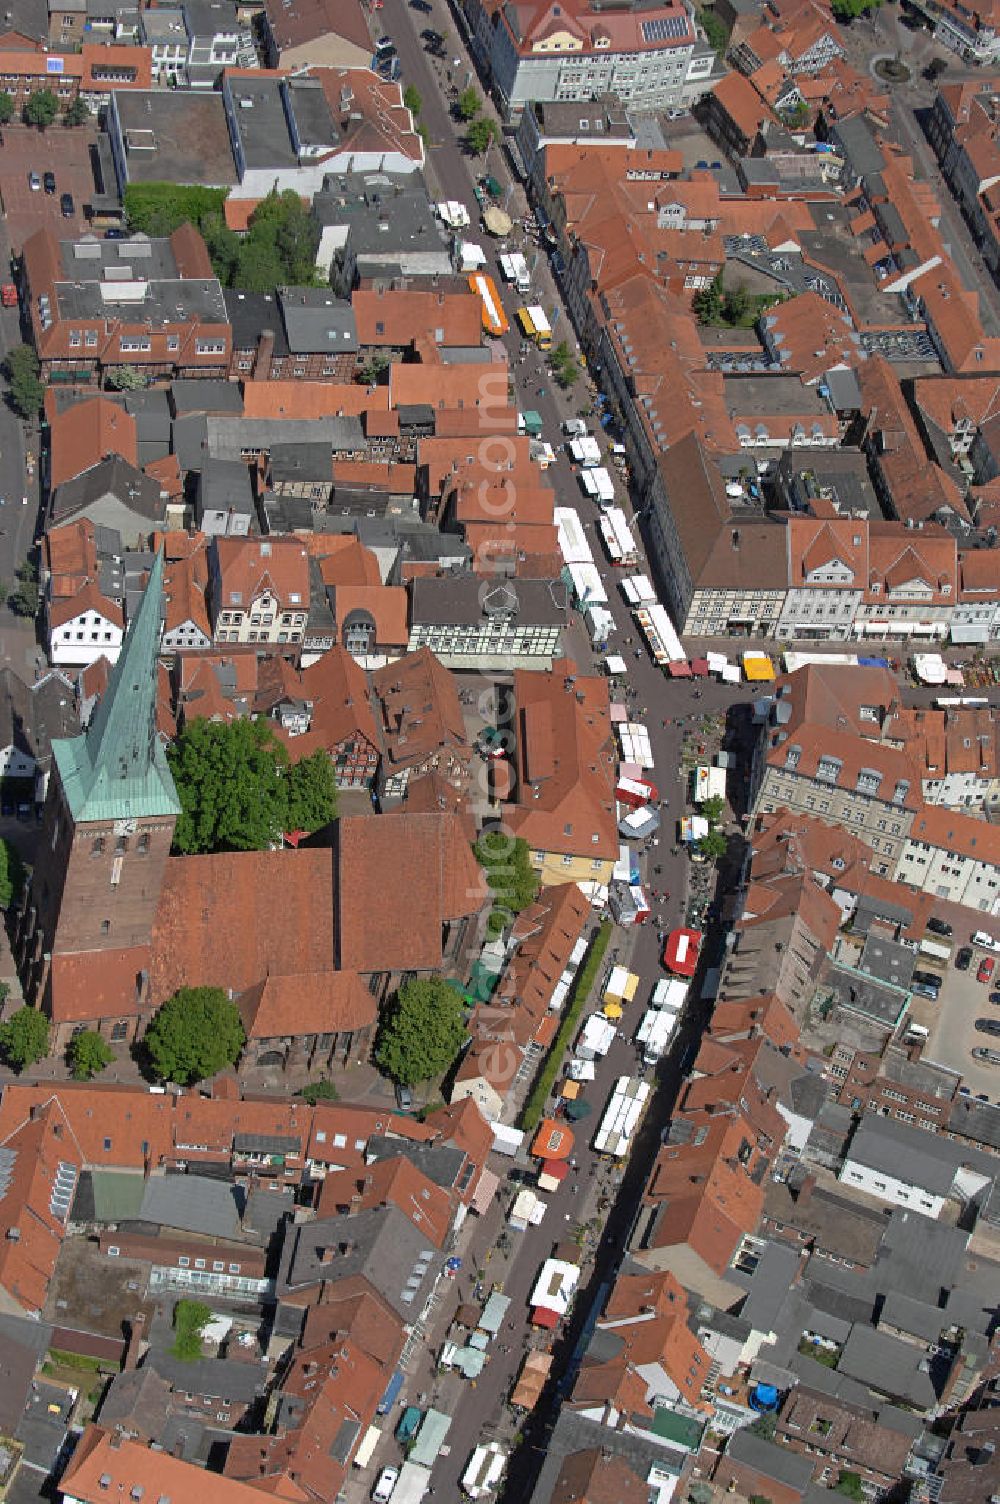 Uelzen from above - Das Stadtzentrum von Uelzen mit dem Wochenmarkt Vitalmarkt . The center of Uelzen and the weekly market caled vital market.